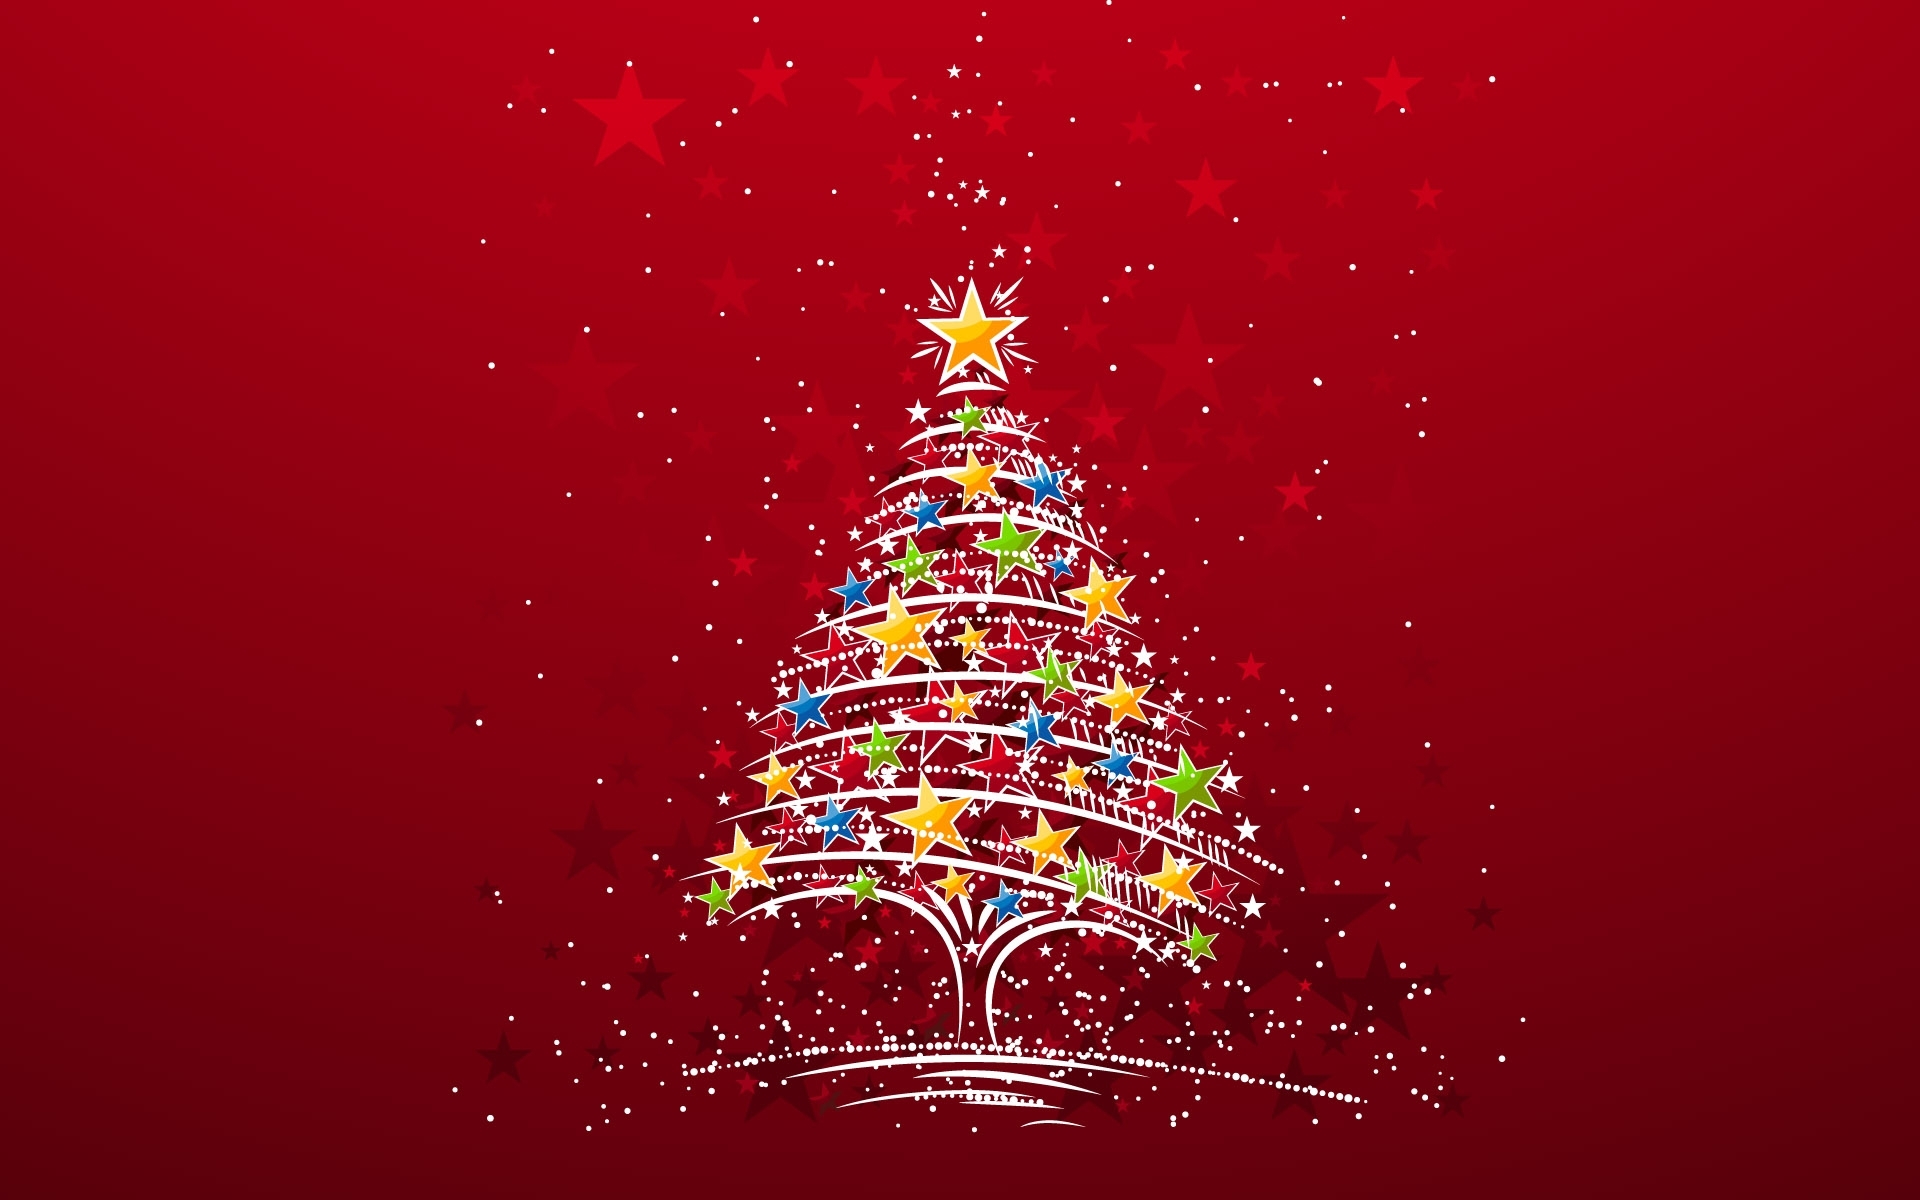 Скачать обои бесплатно Праздники, Рождество (Christmas Xmas), Фон, Новый Год (New Year) картинка на рабочий стол ПК